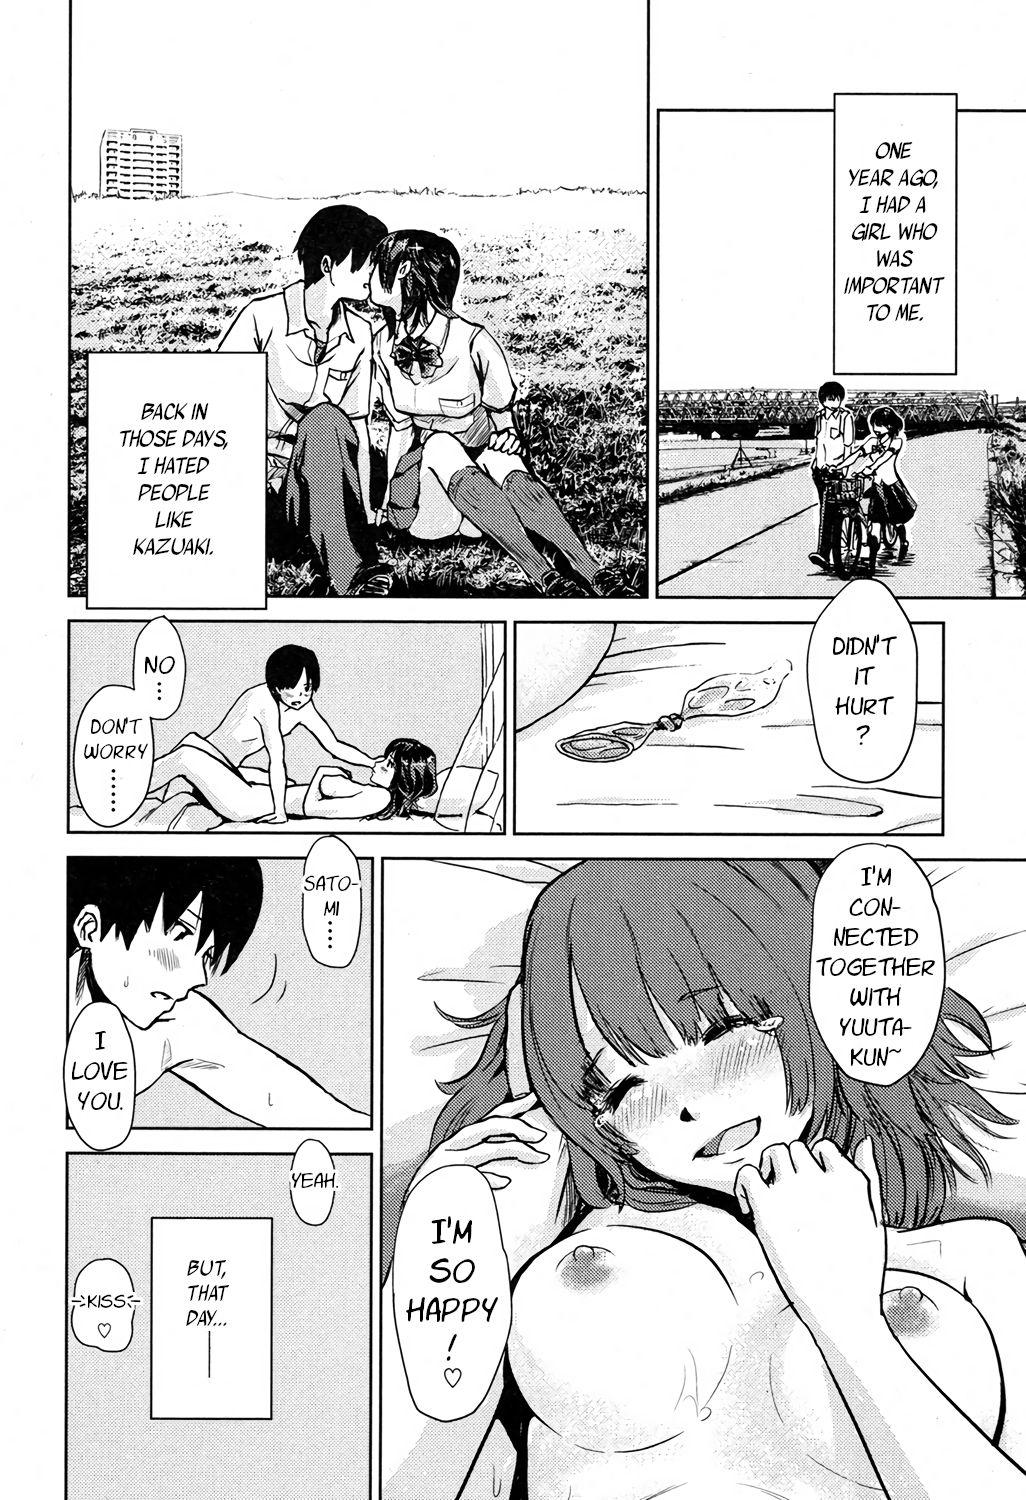 Scene Moto Kano Sharing | Ex-Girlfriend Sharing This - Page 6